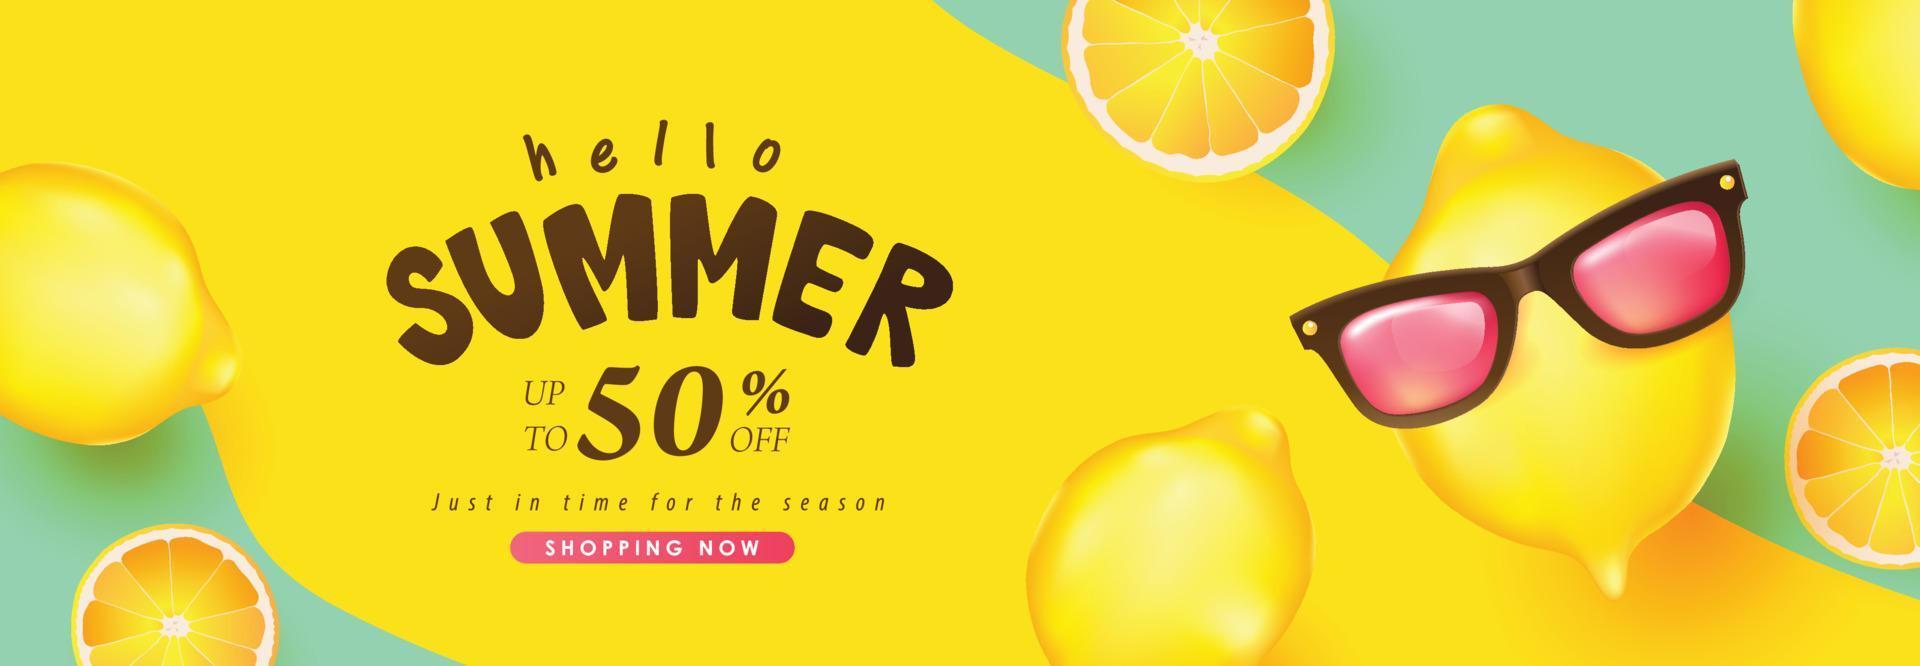 sommar försäljning banner bakgrund med roliga citron dekorera vektor